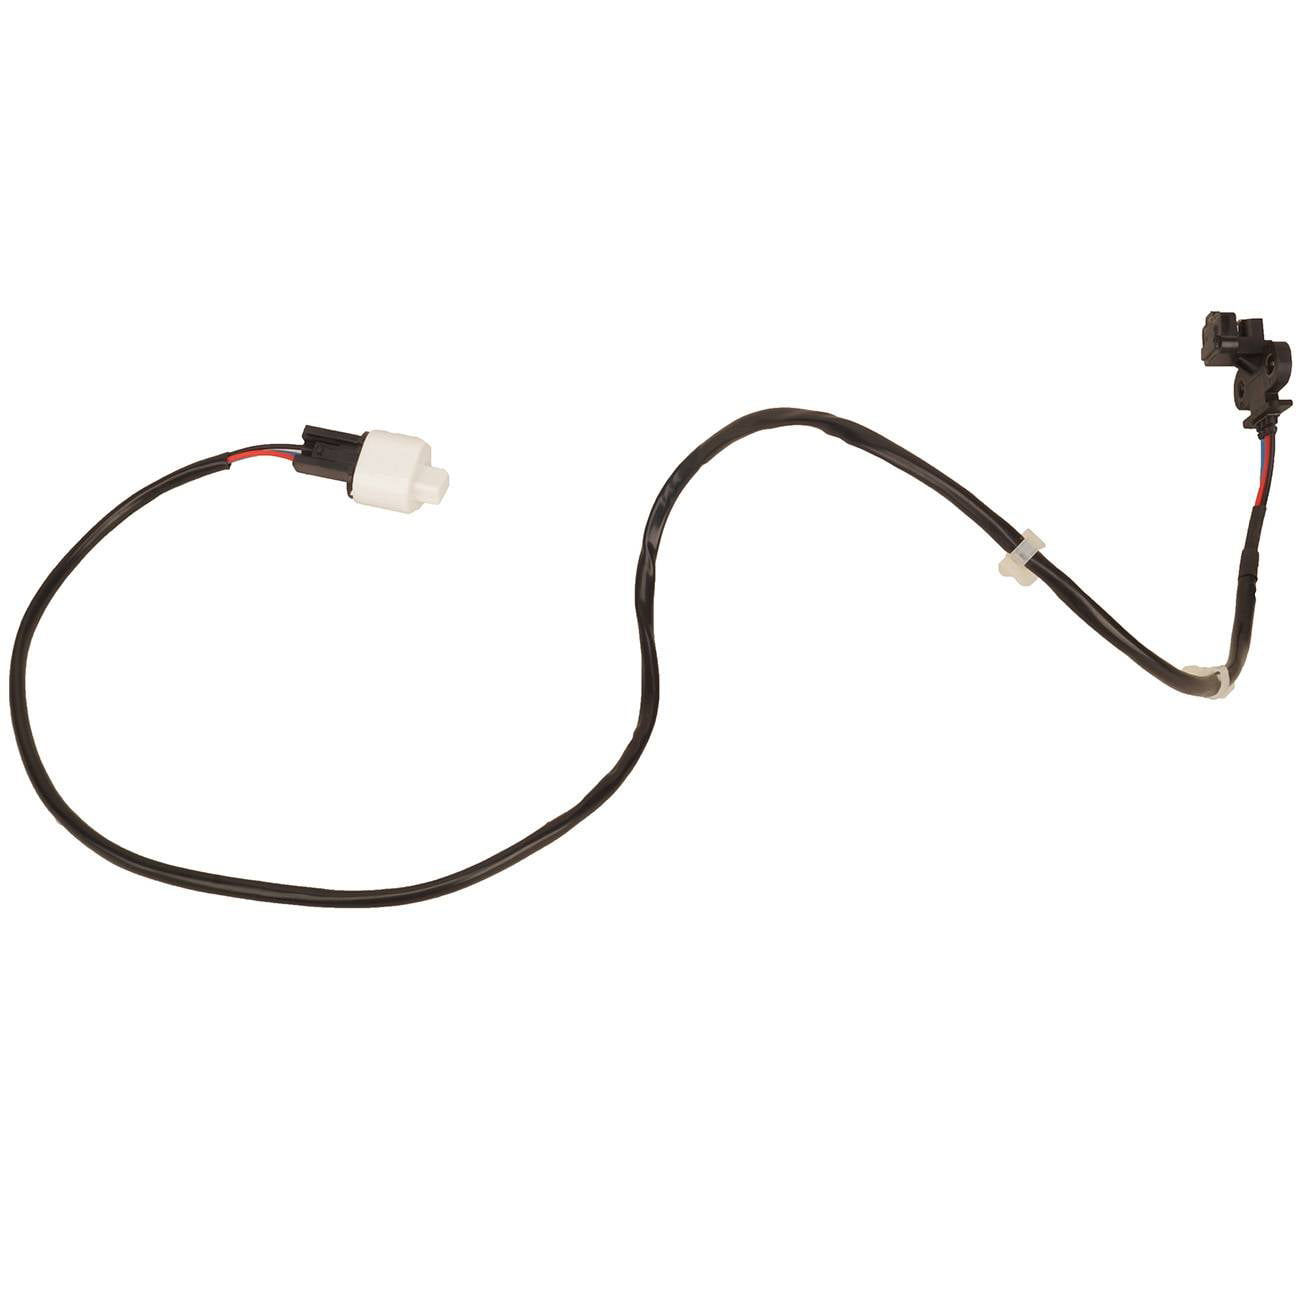 2 Pieces Connector of Camshaft//Crankshaft Position Sensor Fits:Montero 2001-2006